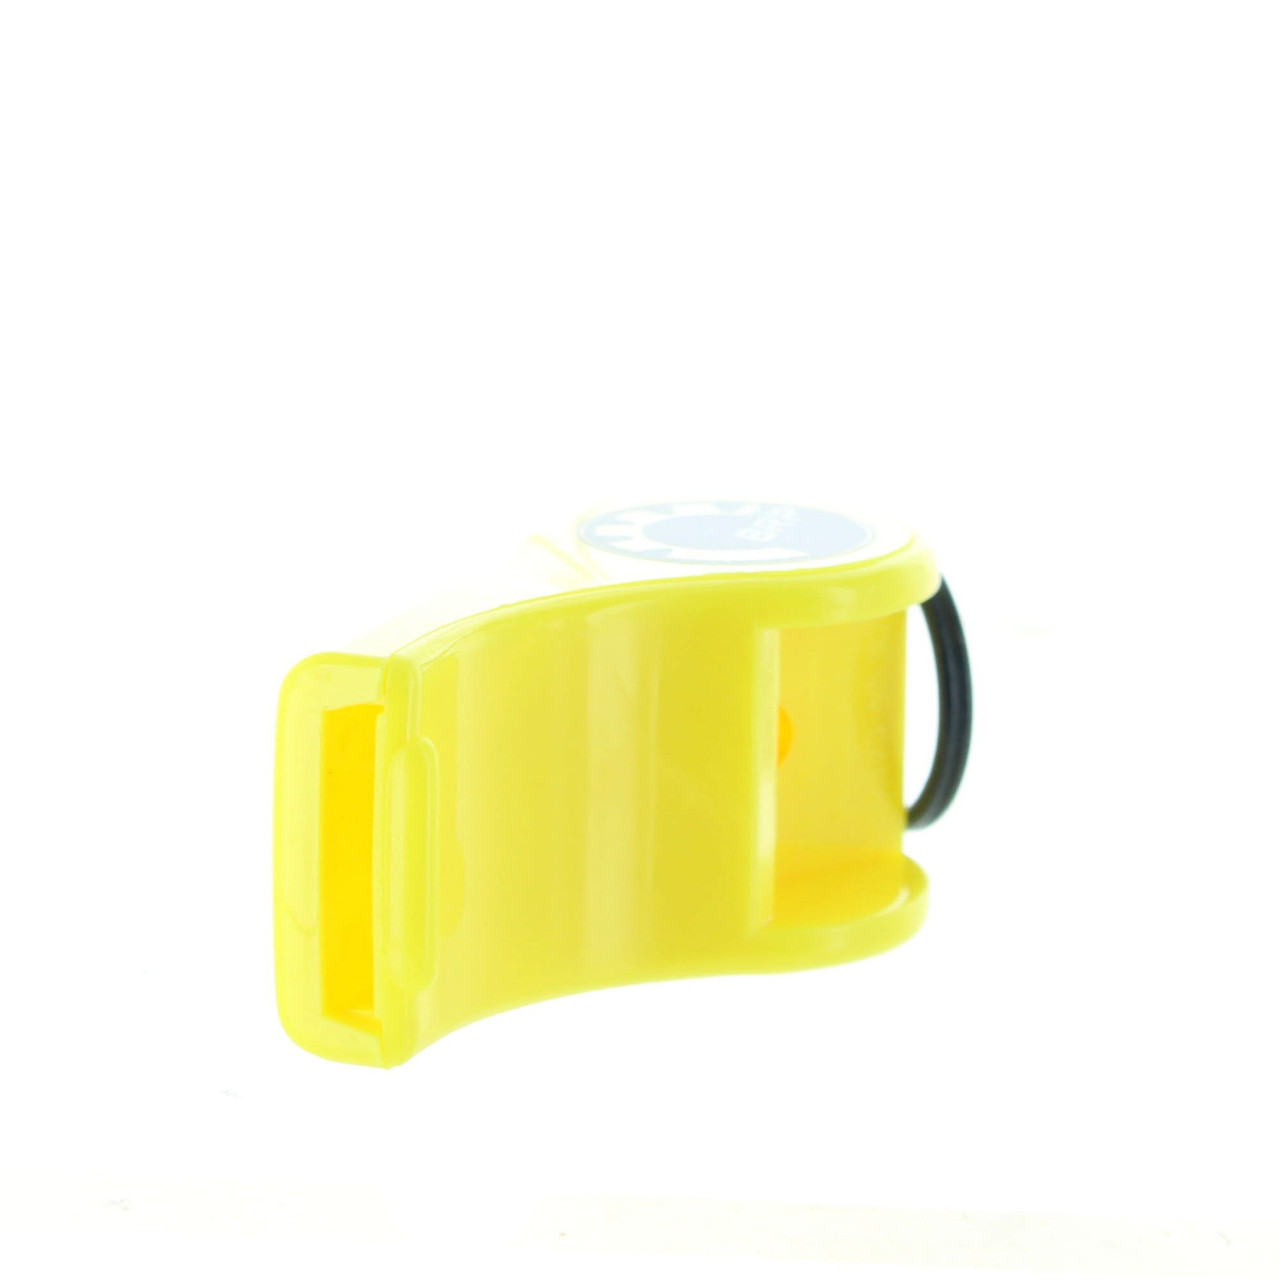 Sea-Doo New OEM Yellow Whistle, 295500554